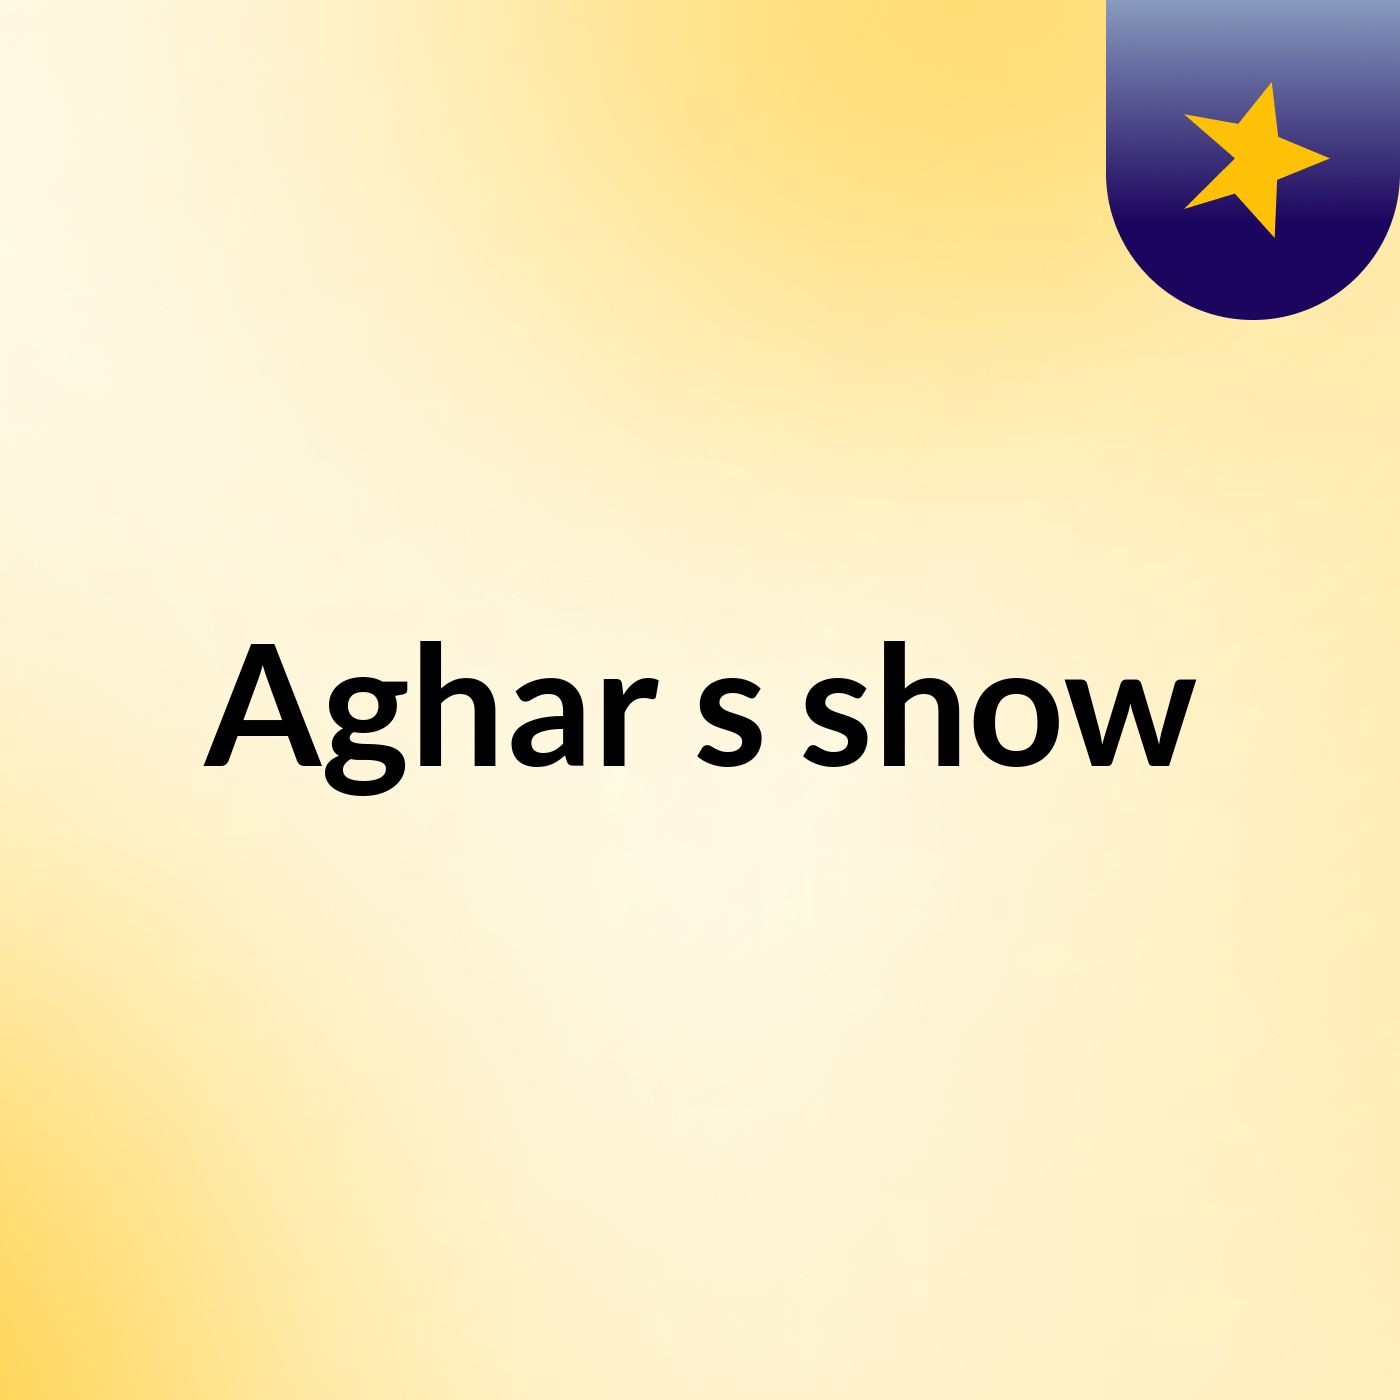 Aghar's show